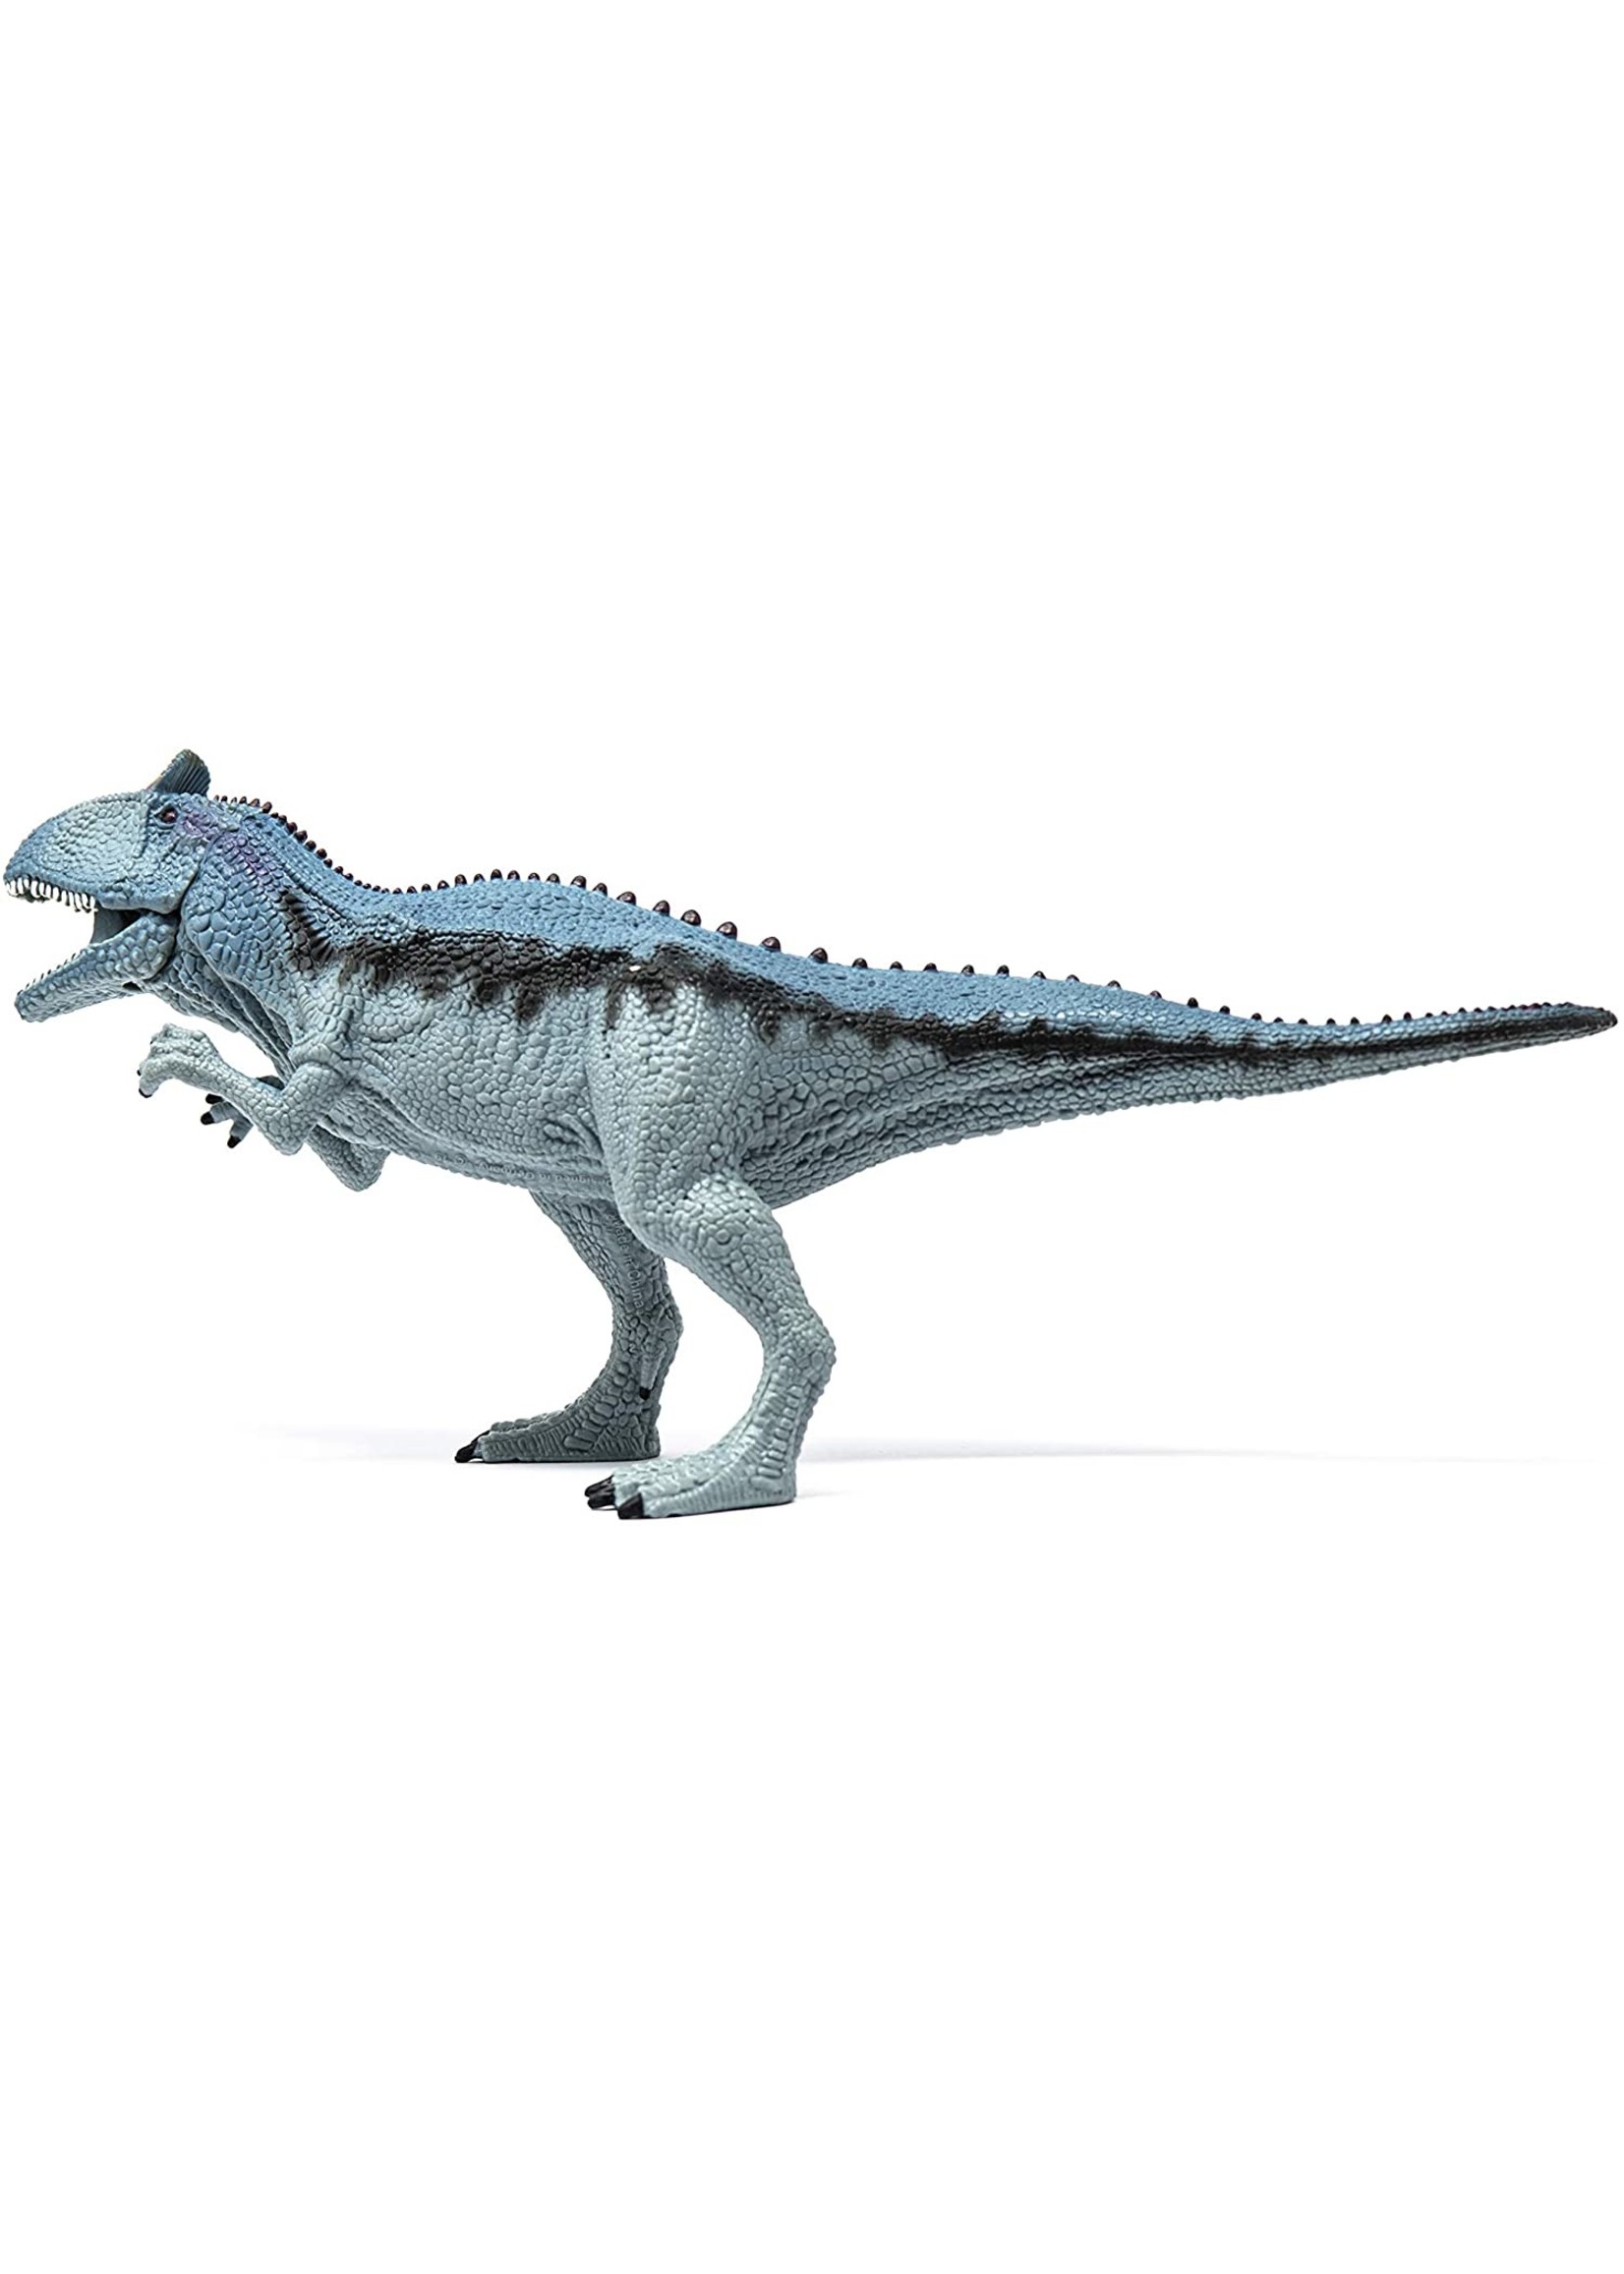 Schleich 15020 - Cryolophosaurus